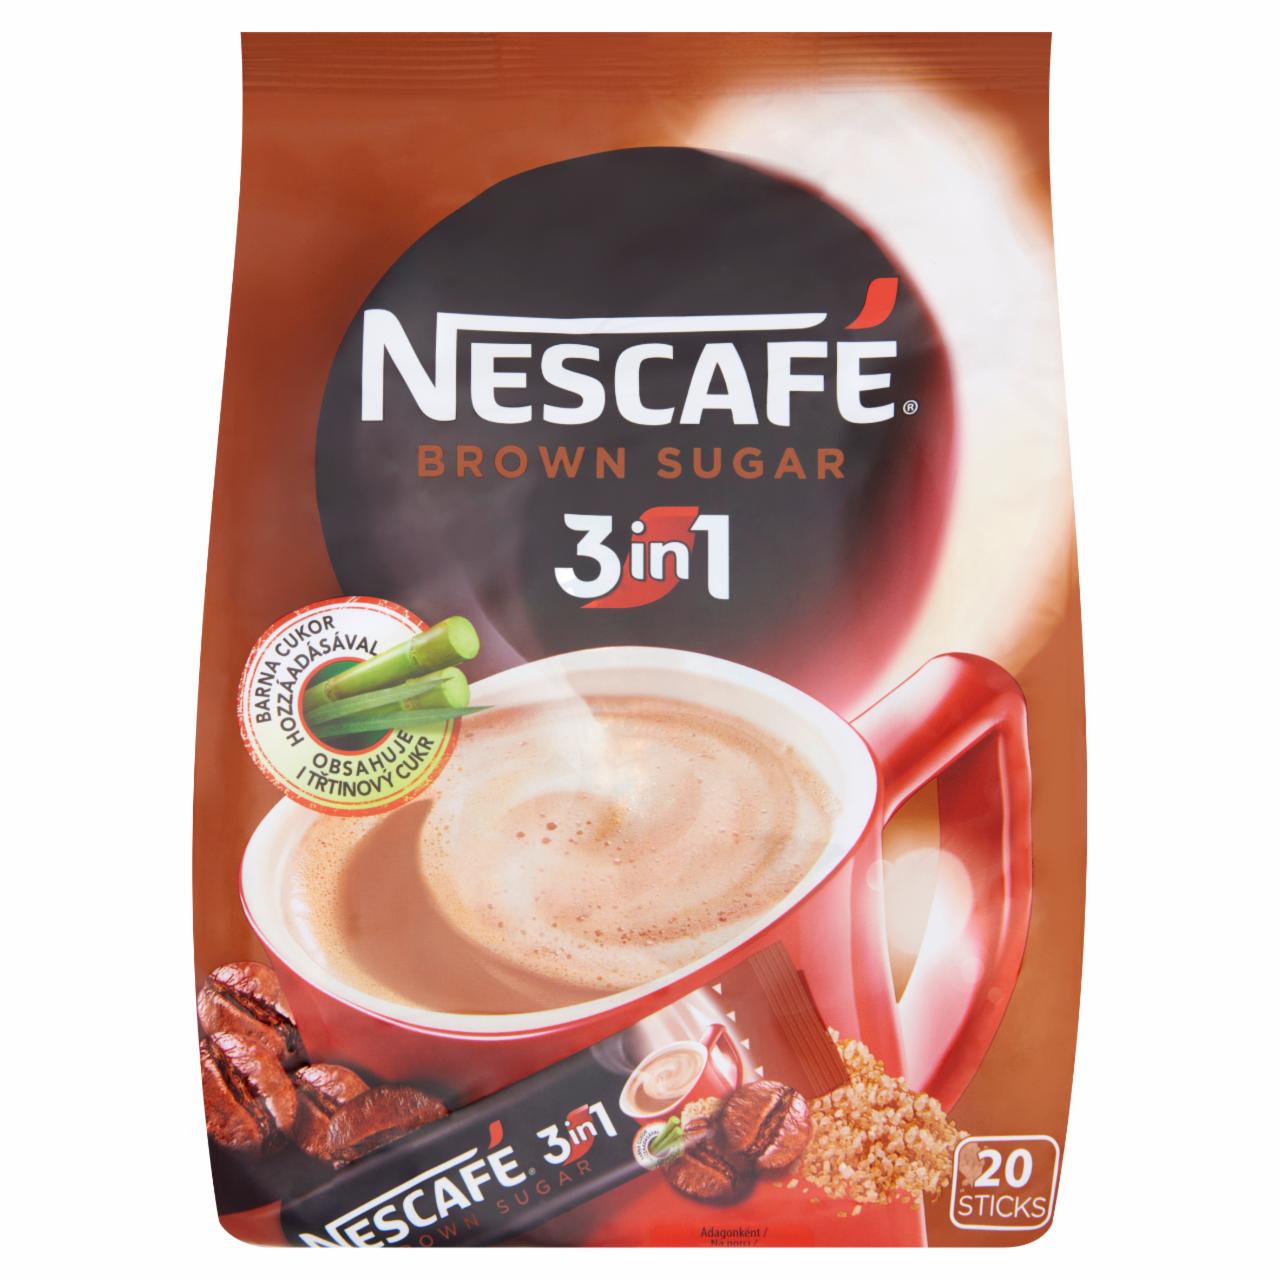 Képek - Nescafé 3in1 azonnal oldódó kávéspecialitás barna cukorral 20 db 340 g